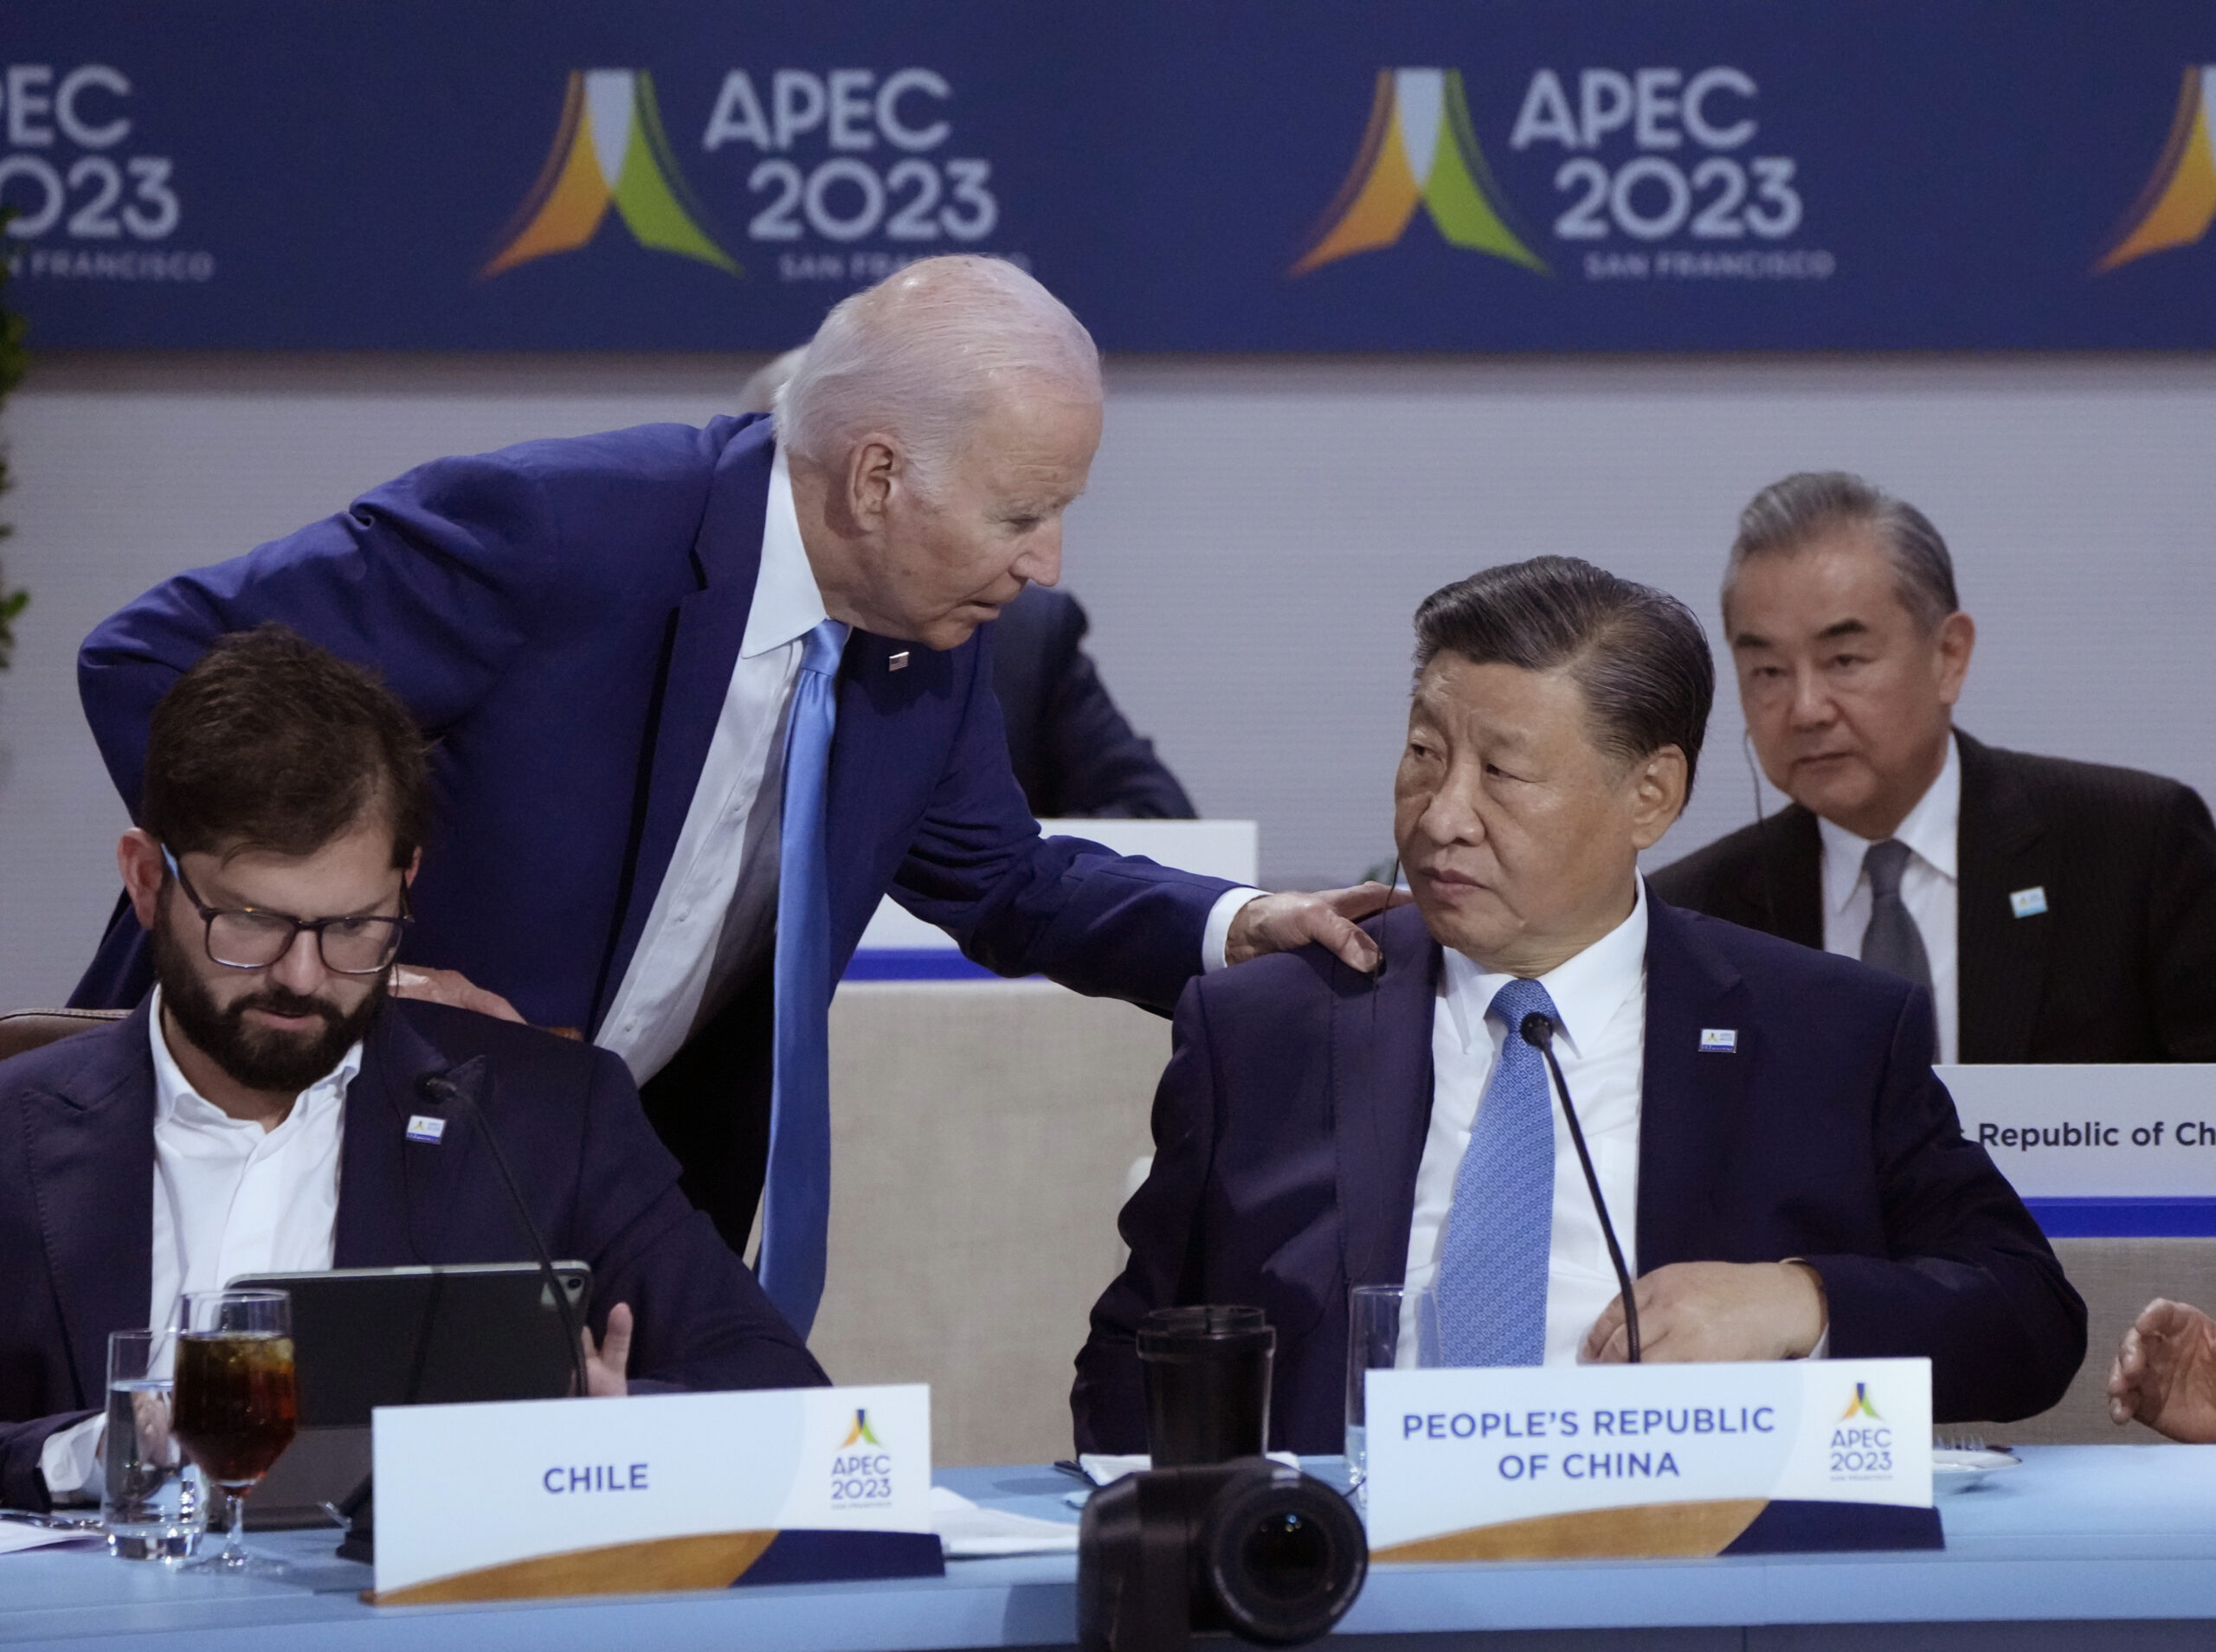 国际动荡加剧之际APEC的价值